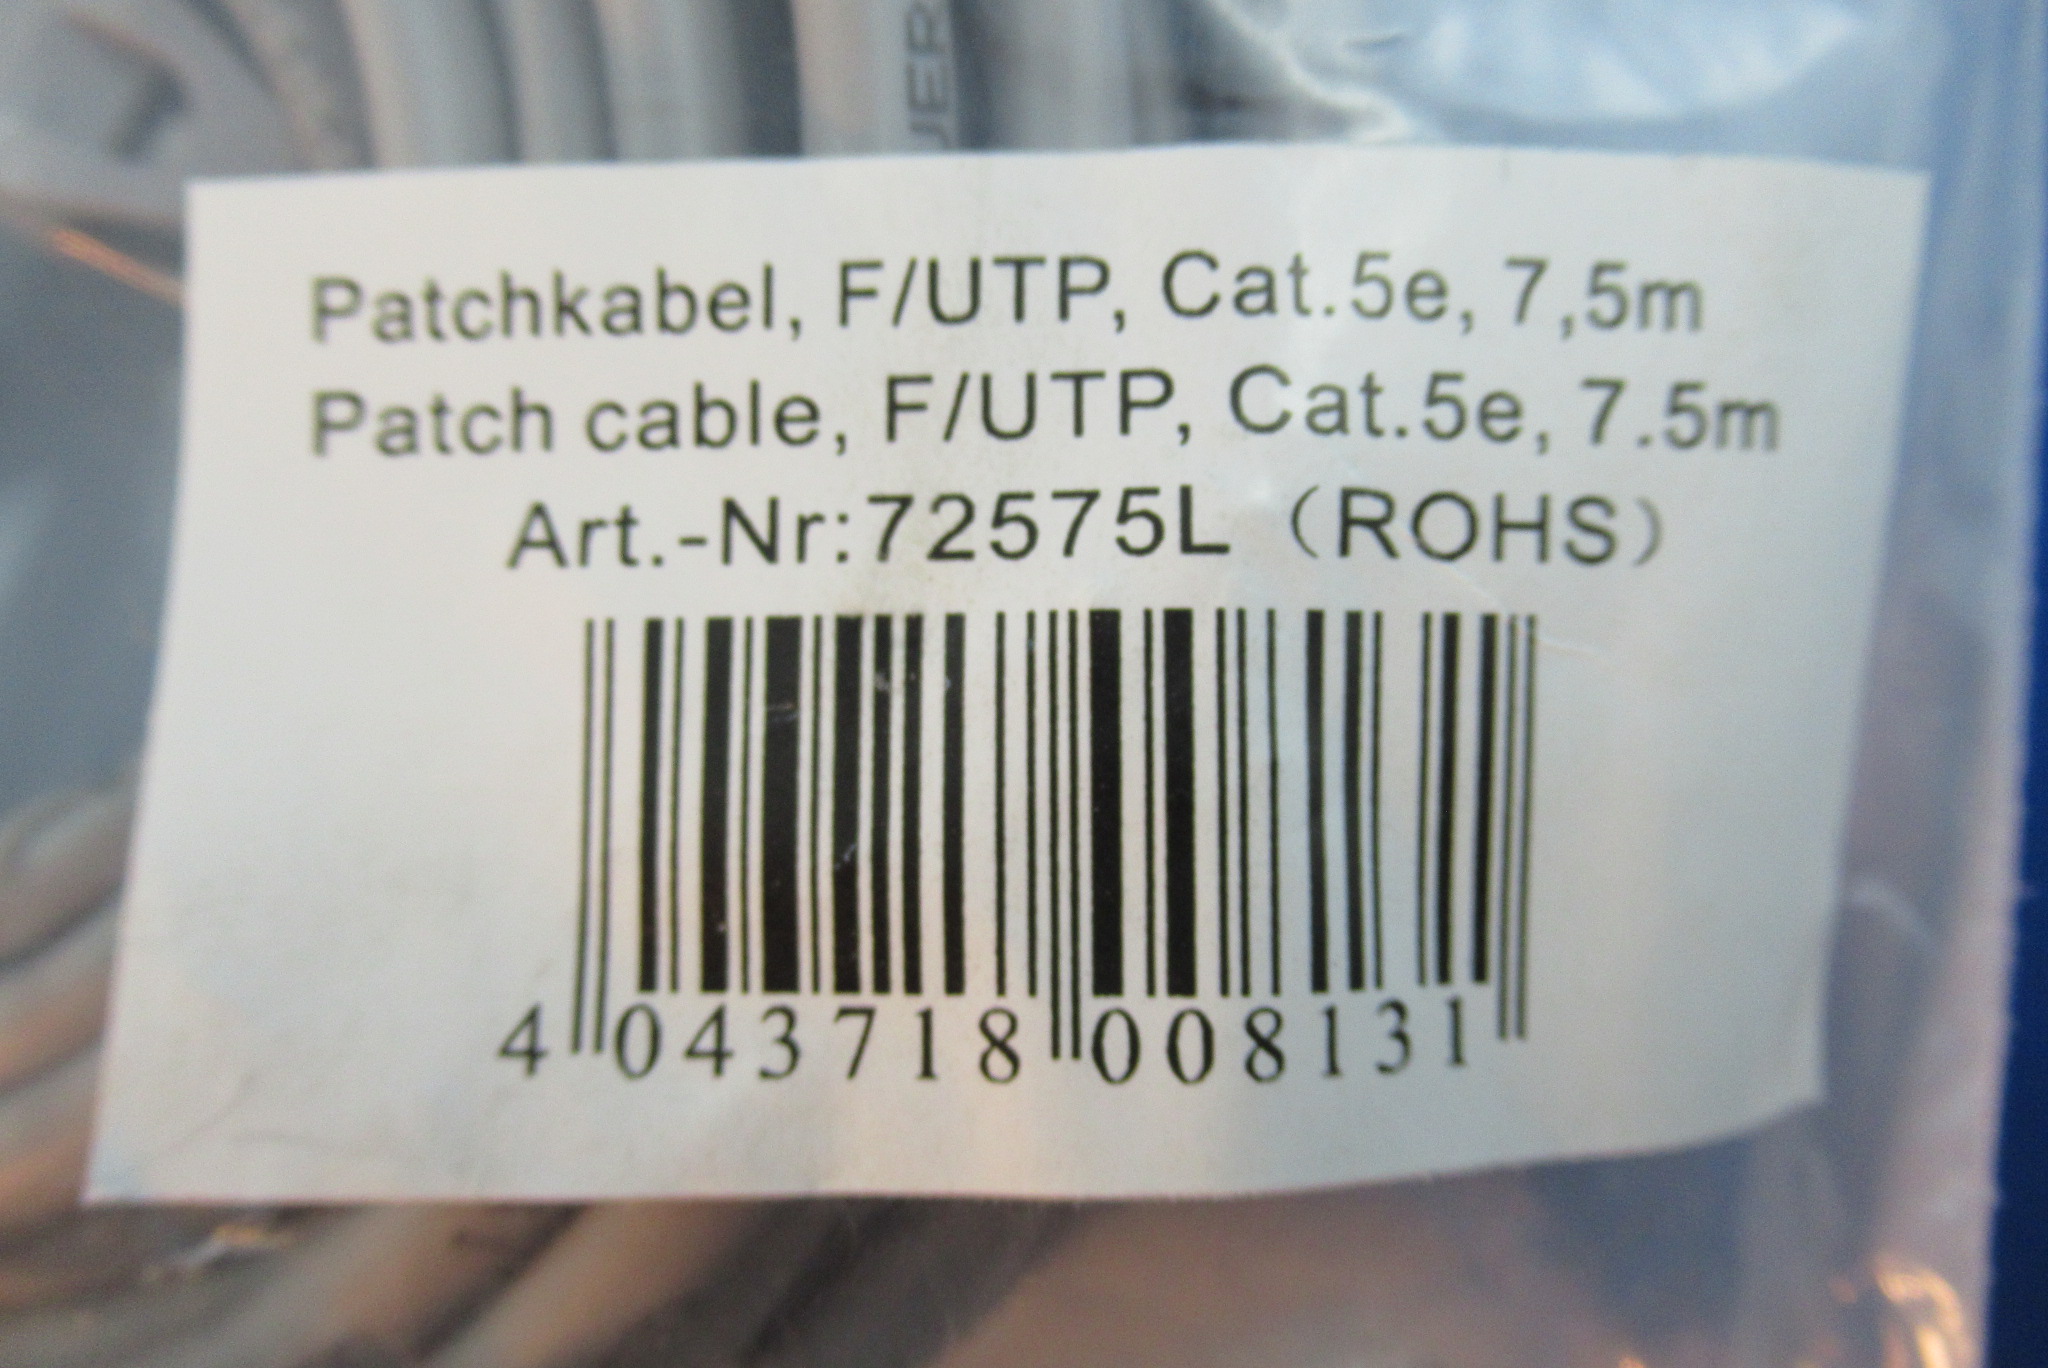 TP Patchkabel Kat.5e F/UTP 7,5m grau INTOS 72575L